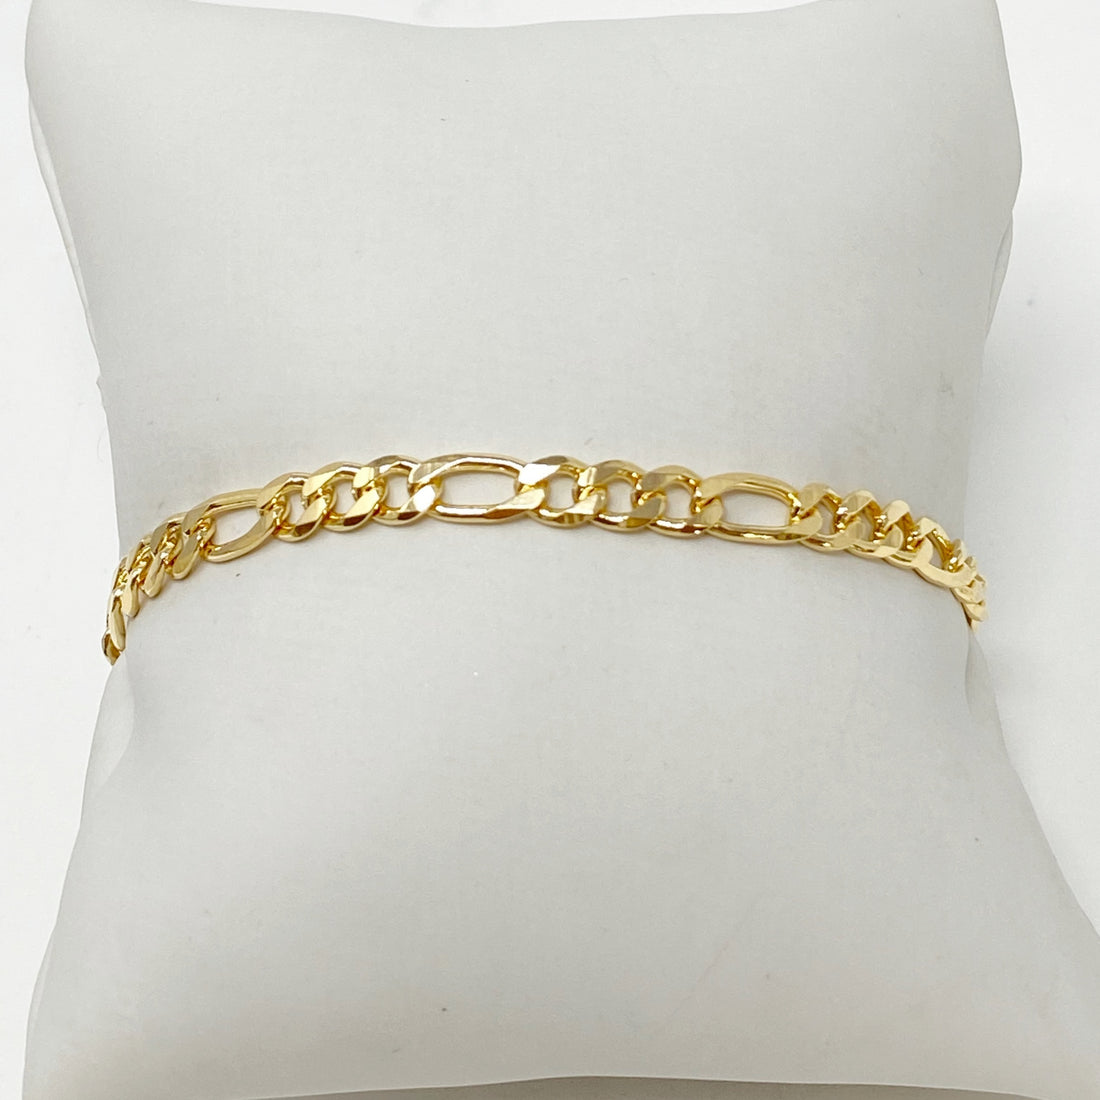 Stella Chainlink Bracelet in 14K Gold Fill